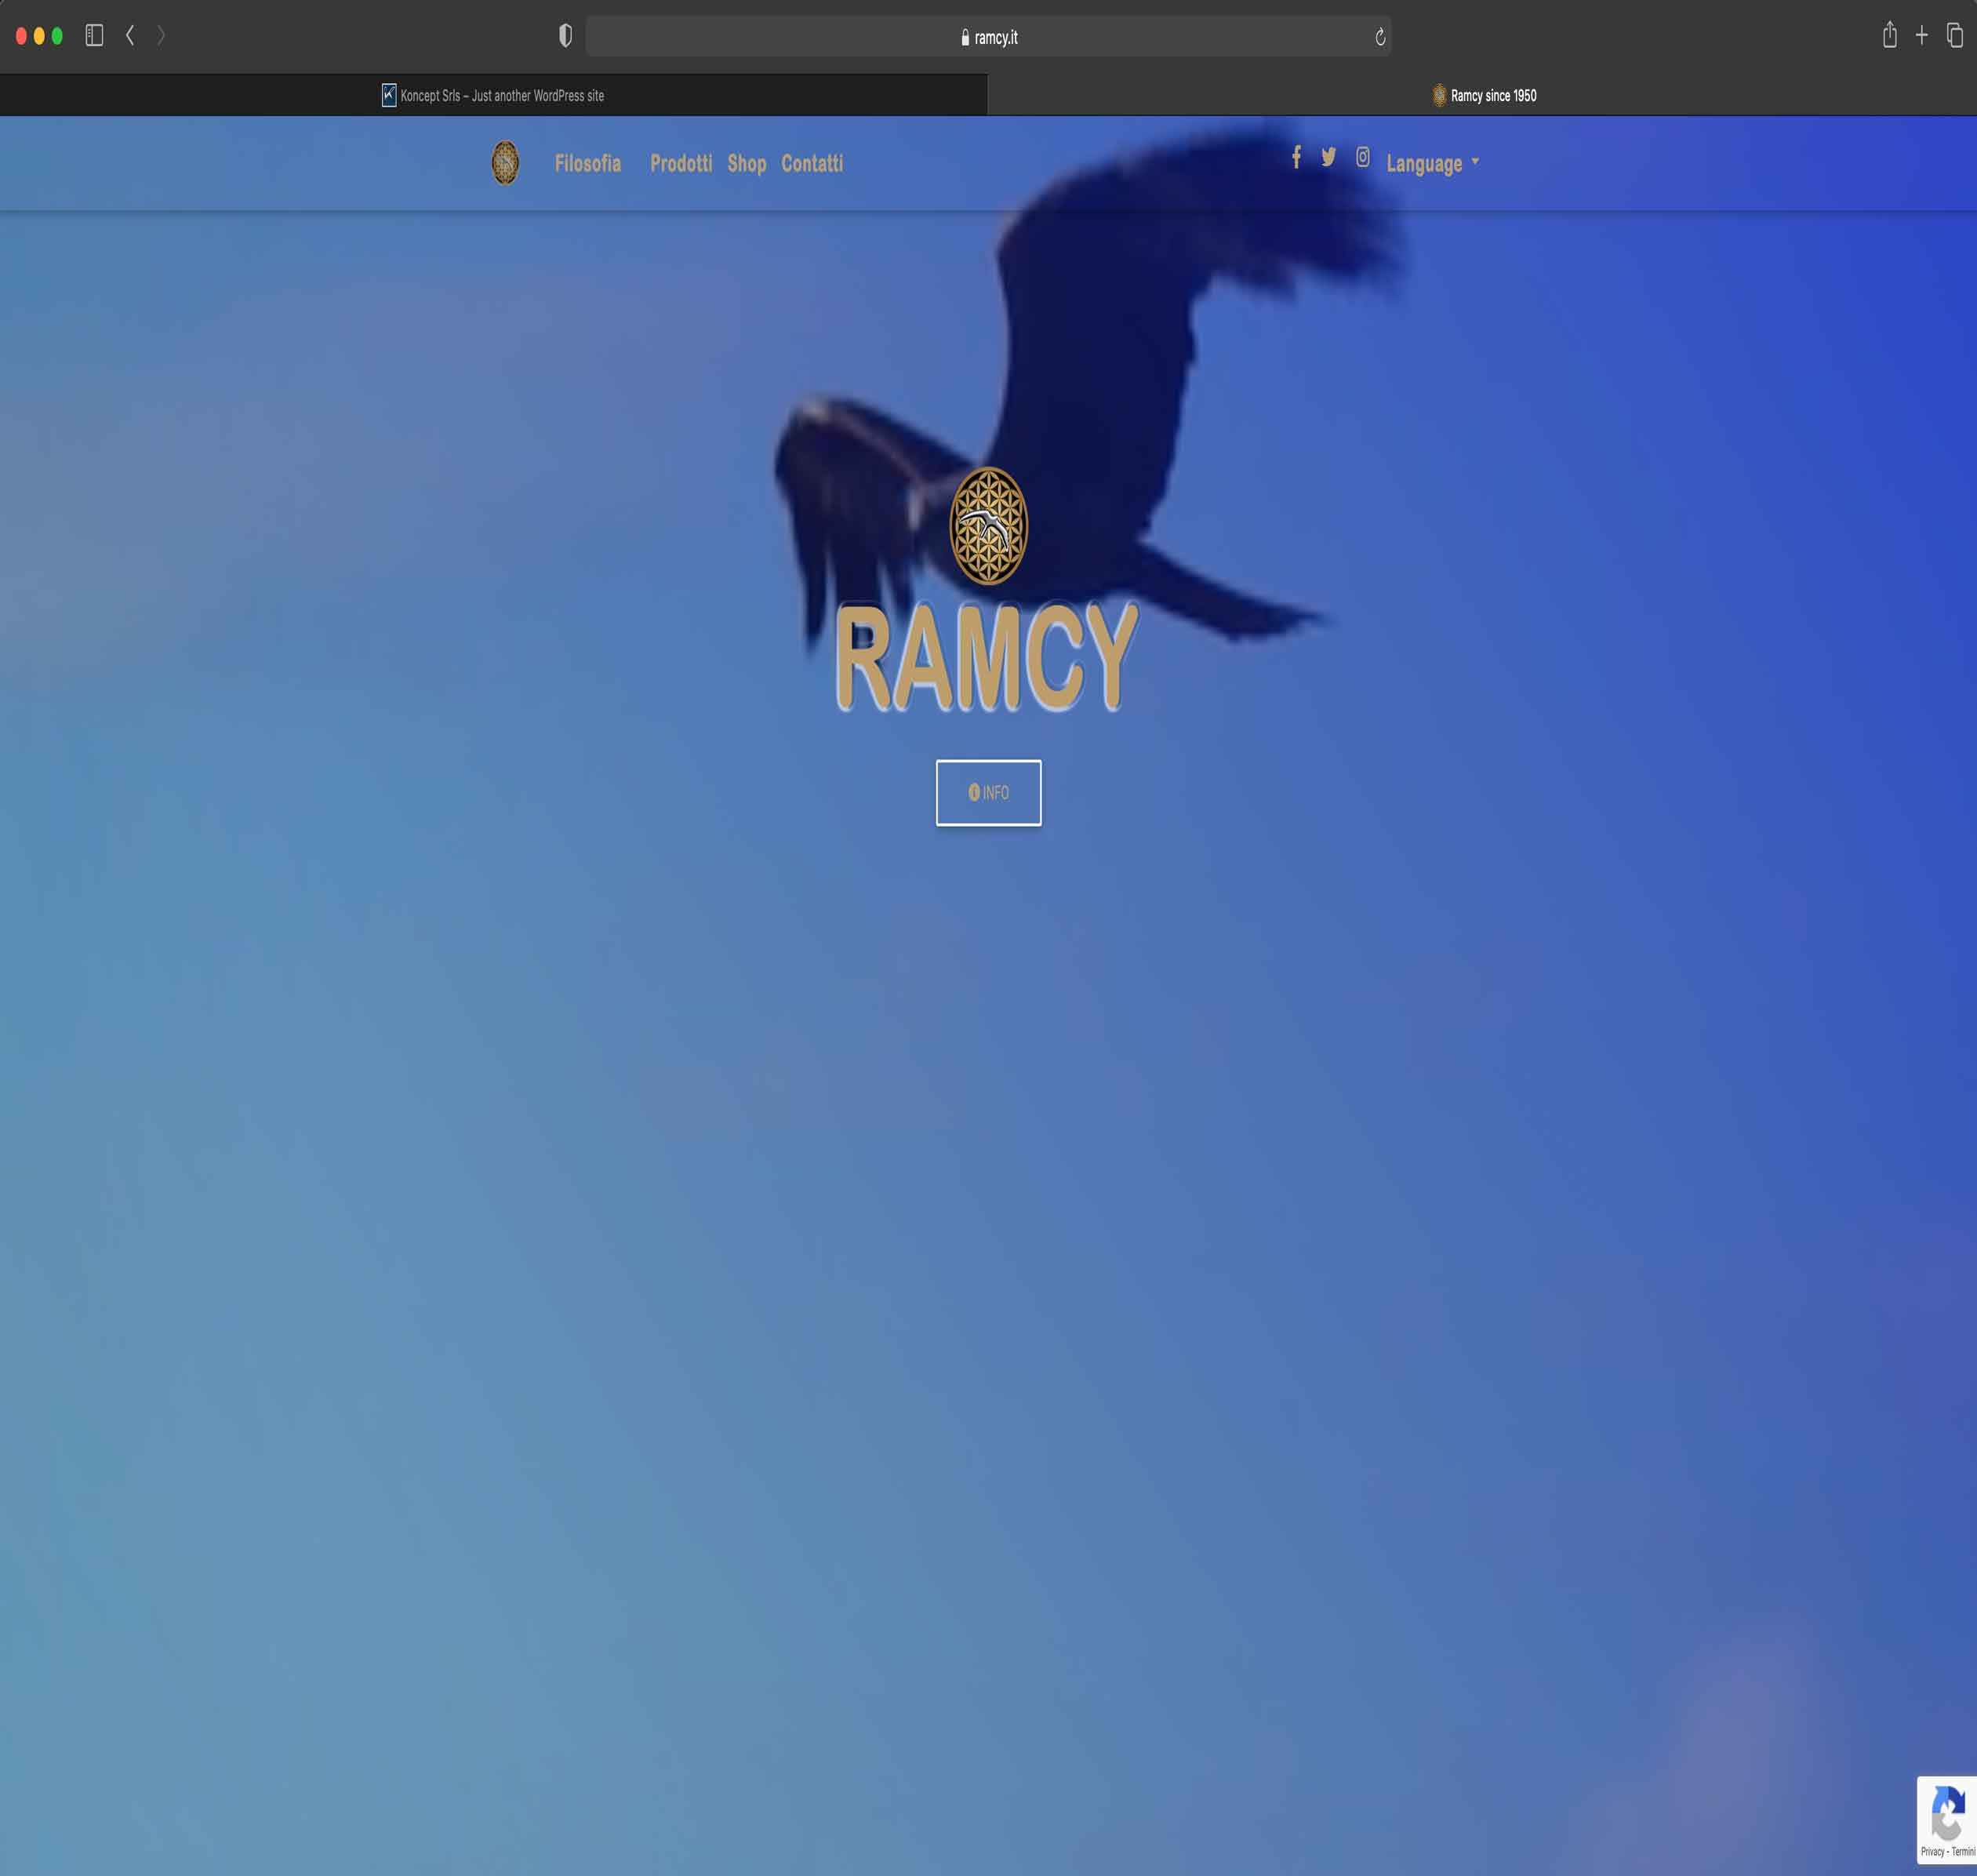 Ramcy since 1950 - Sito Web ed E-commerce